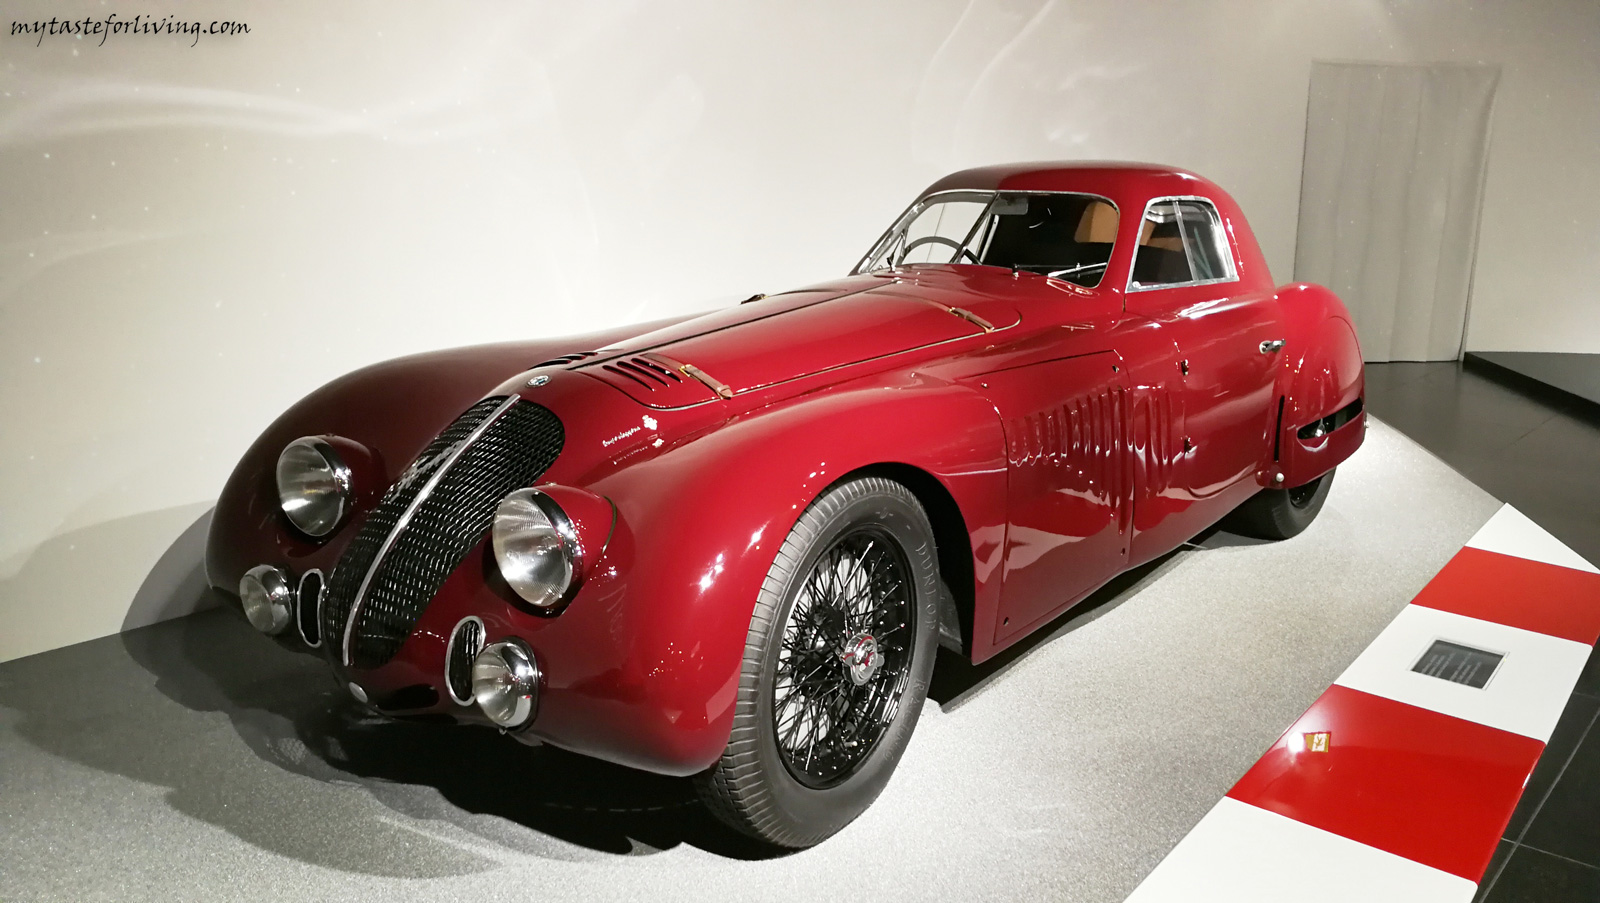 Историческият музей „Алфа Ромео“ (Museo Storico Alfa Romeo) на италианската автомобилна компания е открит на 18 декември 1976 г. Музеят е построен в градчето Арезе, на 12 километра от Милано.